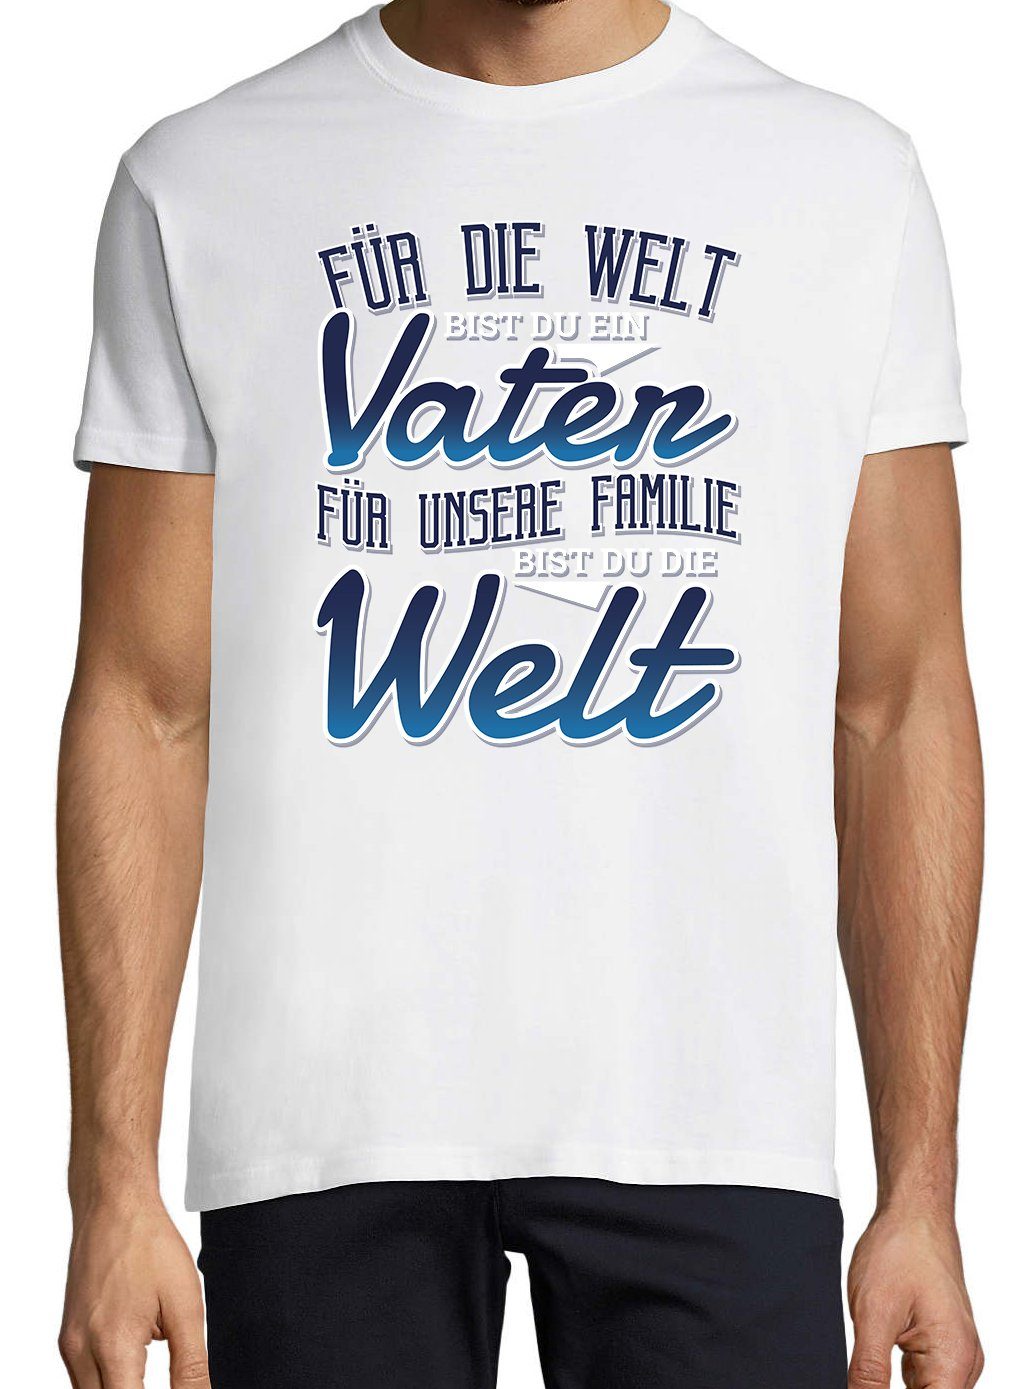 Weiss Youth Herren Die Welt" Bist Spruch "Für Familie lustigem Du Designz Print-Shirt T-Shirt Unsere mit